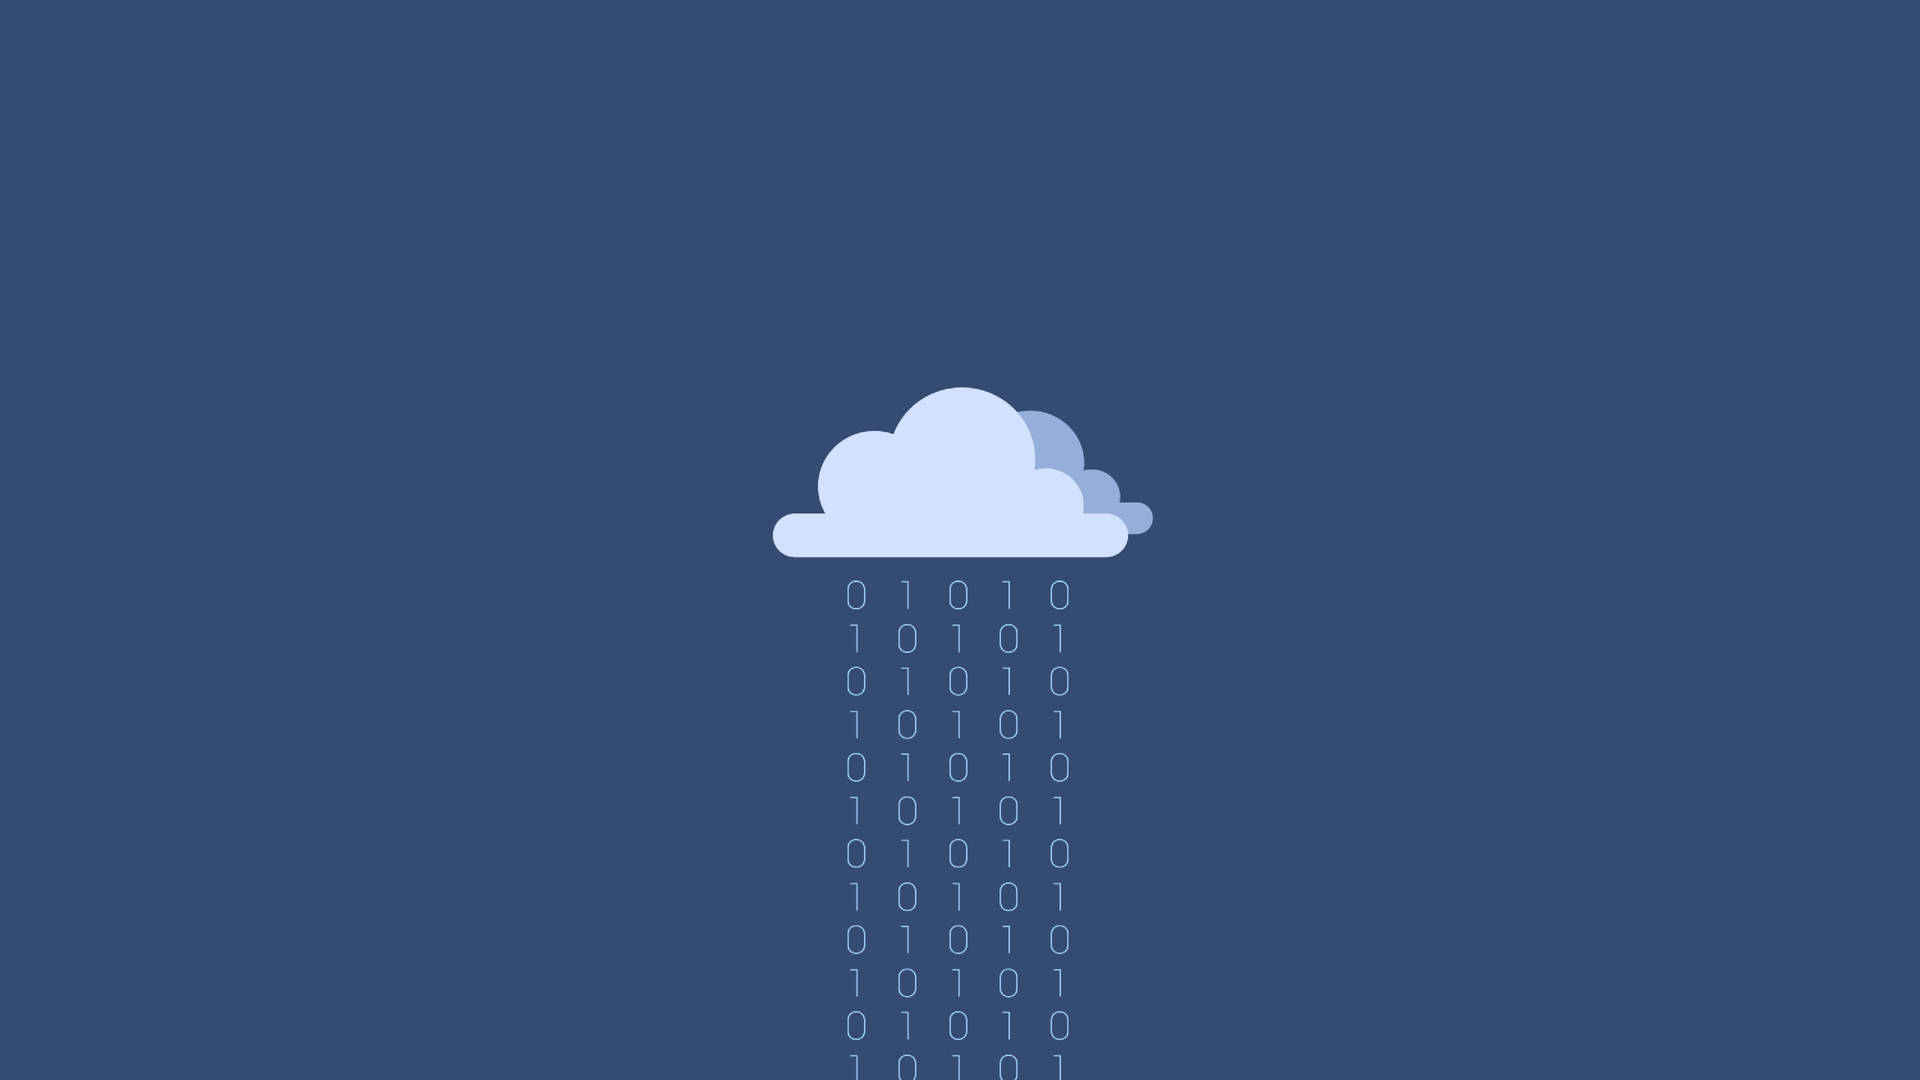 Raining Binary Programming Code Wallpaper